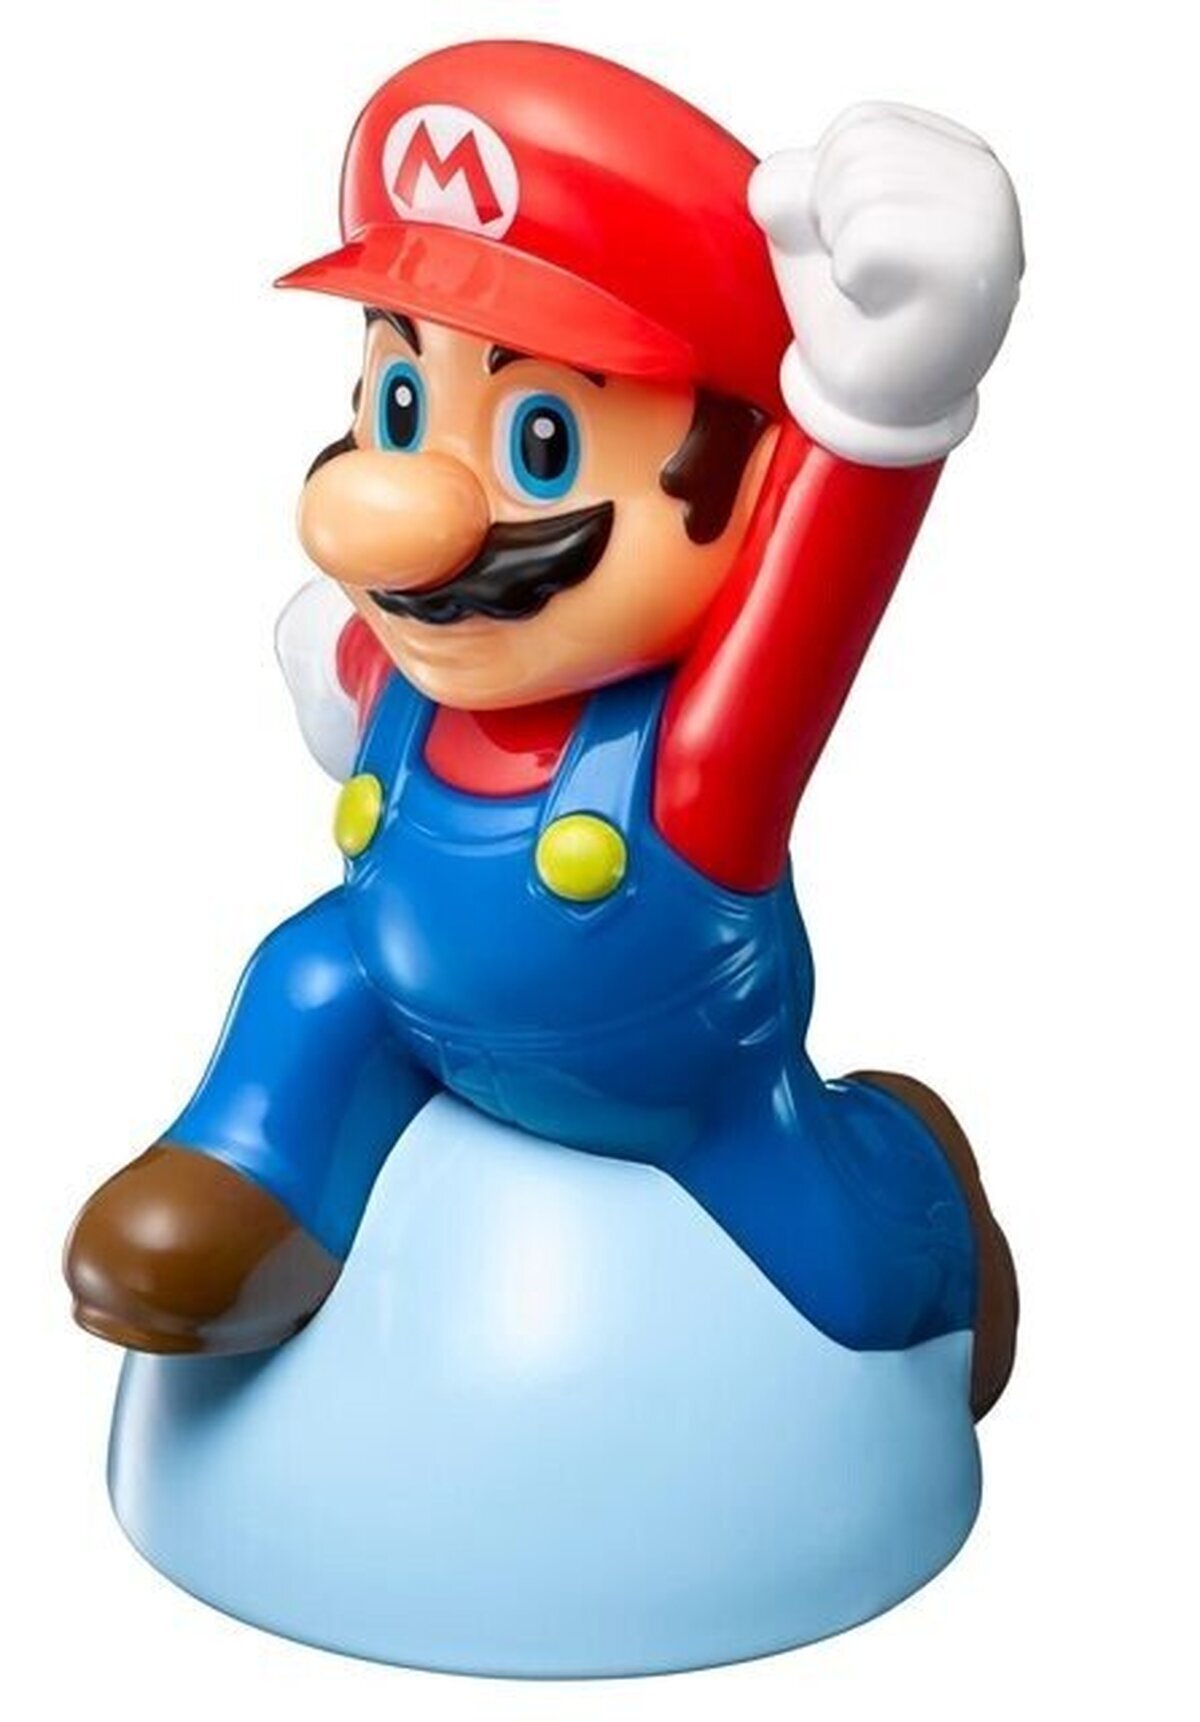 Mario provoca la obesidad con las nuevas figuras de McDonald’s